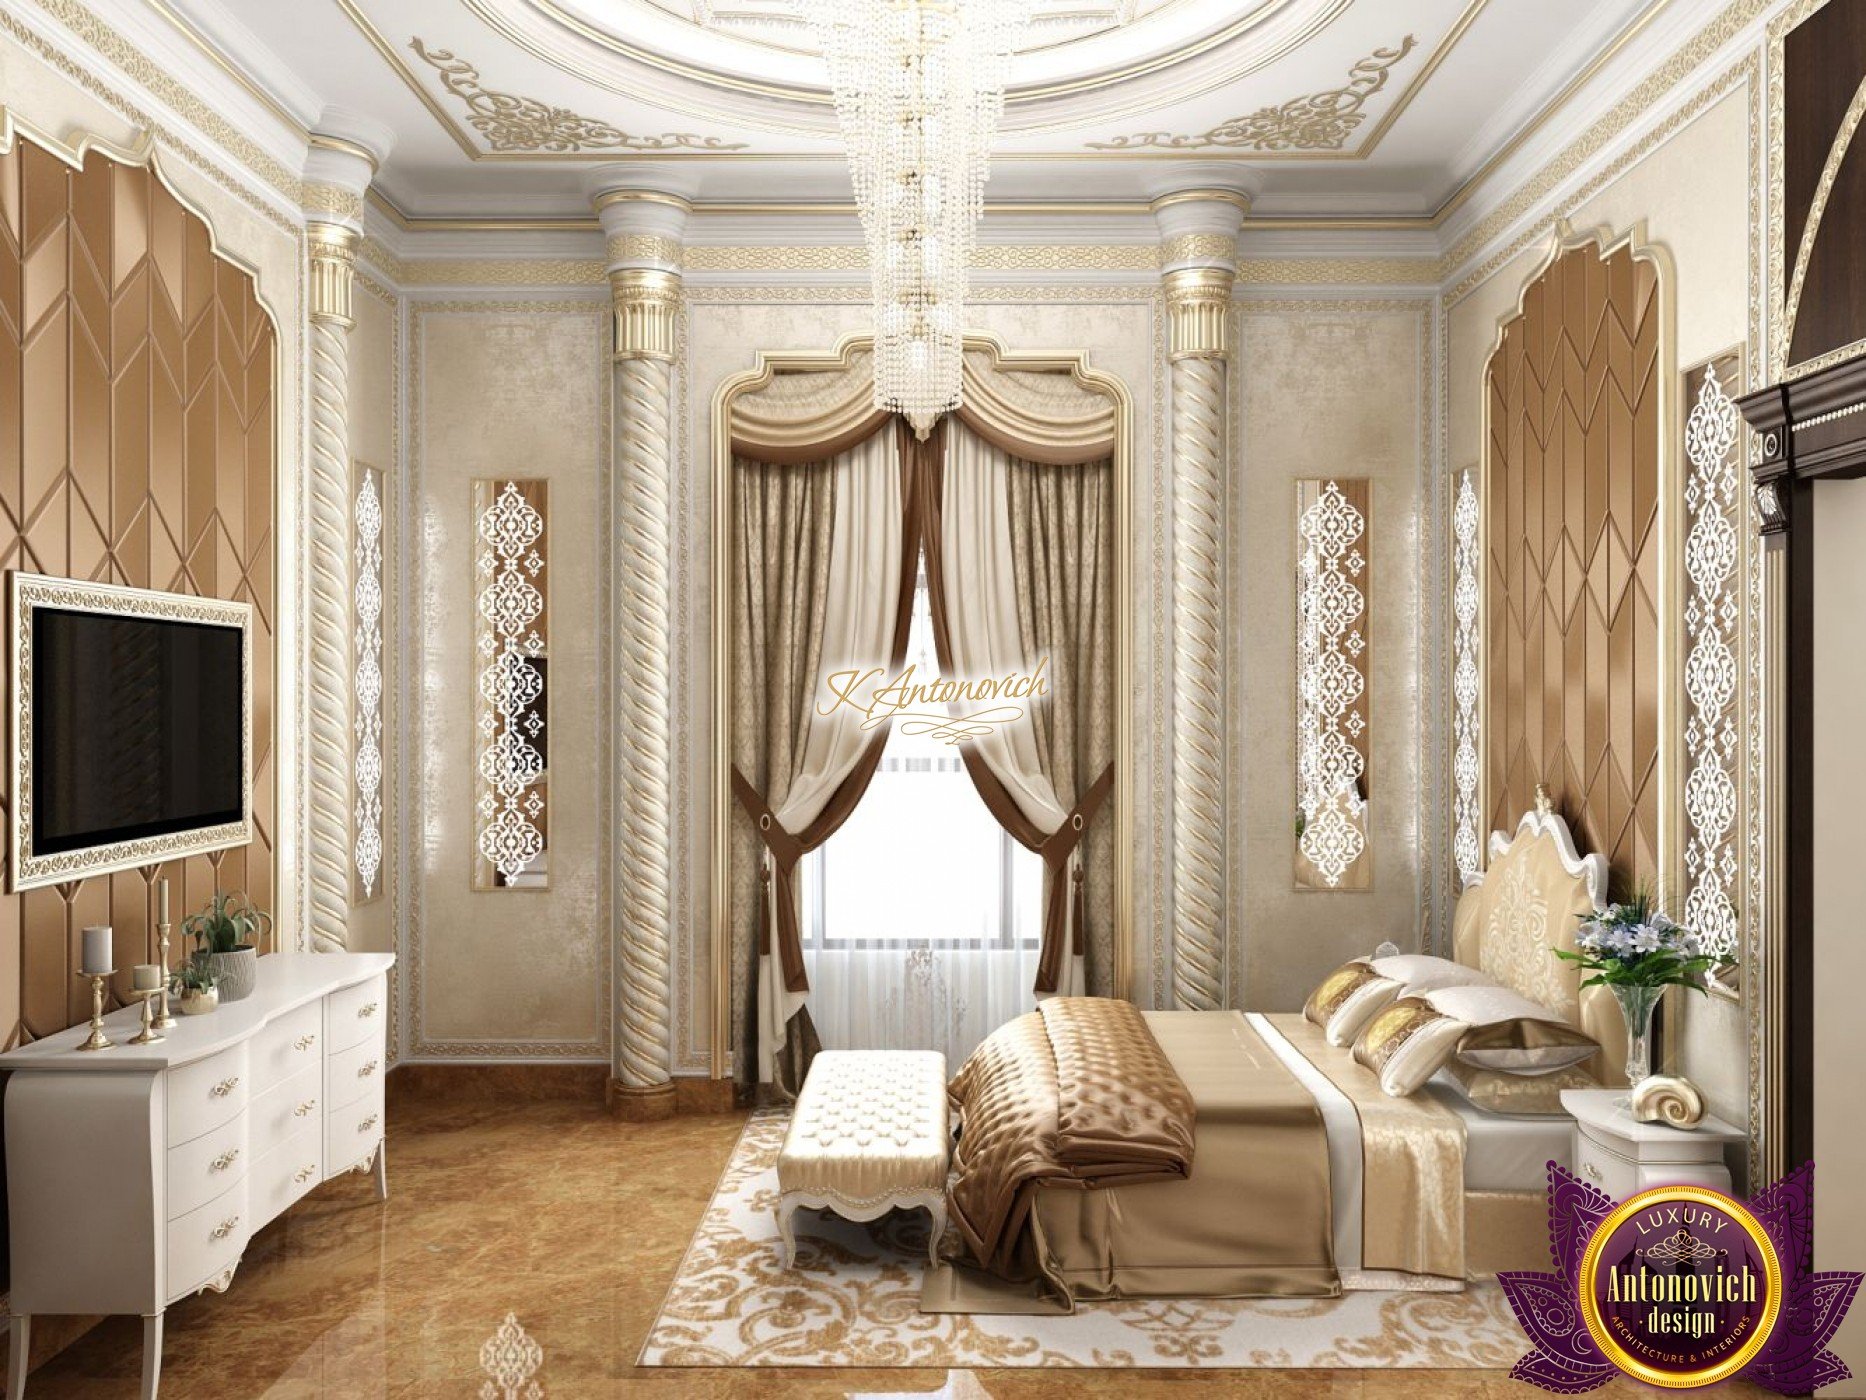 Exclusive luxury bedroom interior design